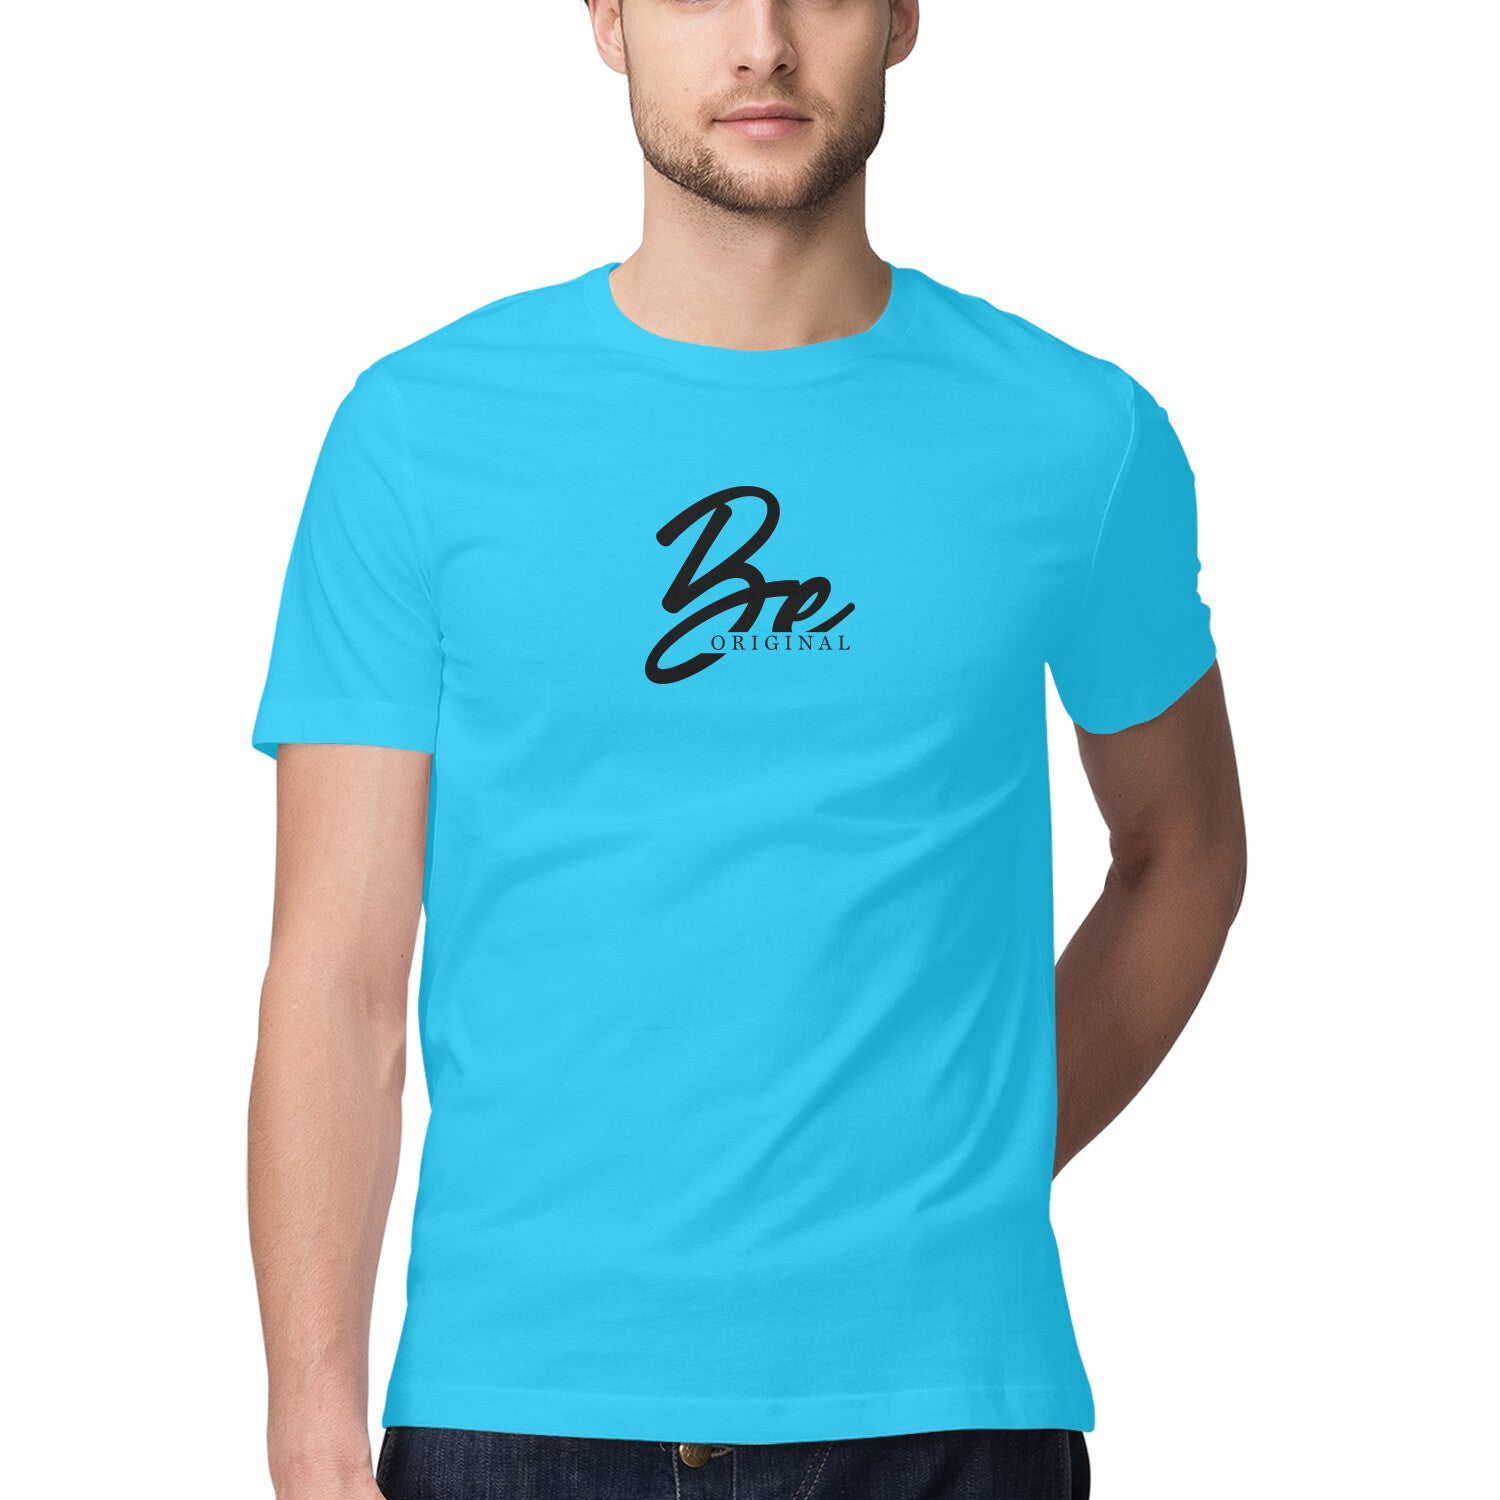 Be Original | Men's T-Shirt - FairyBellsKart